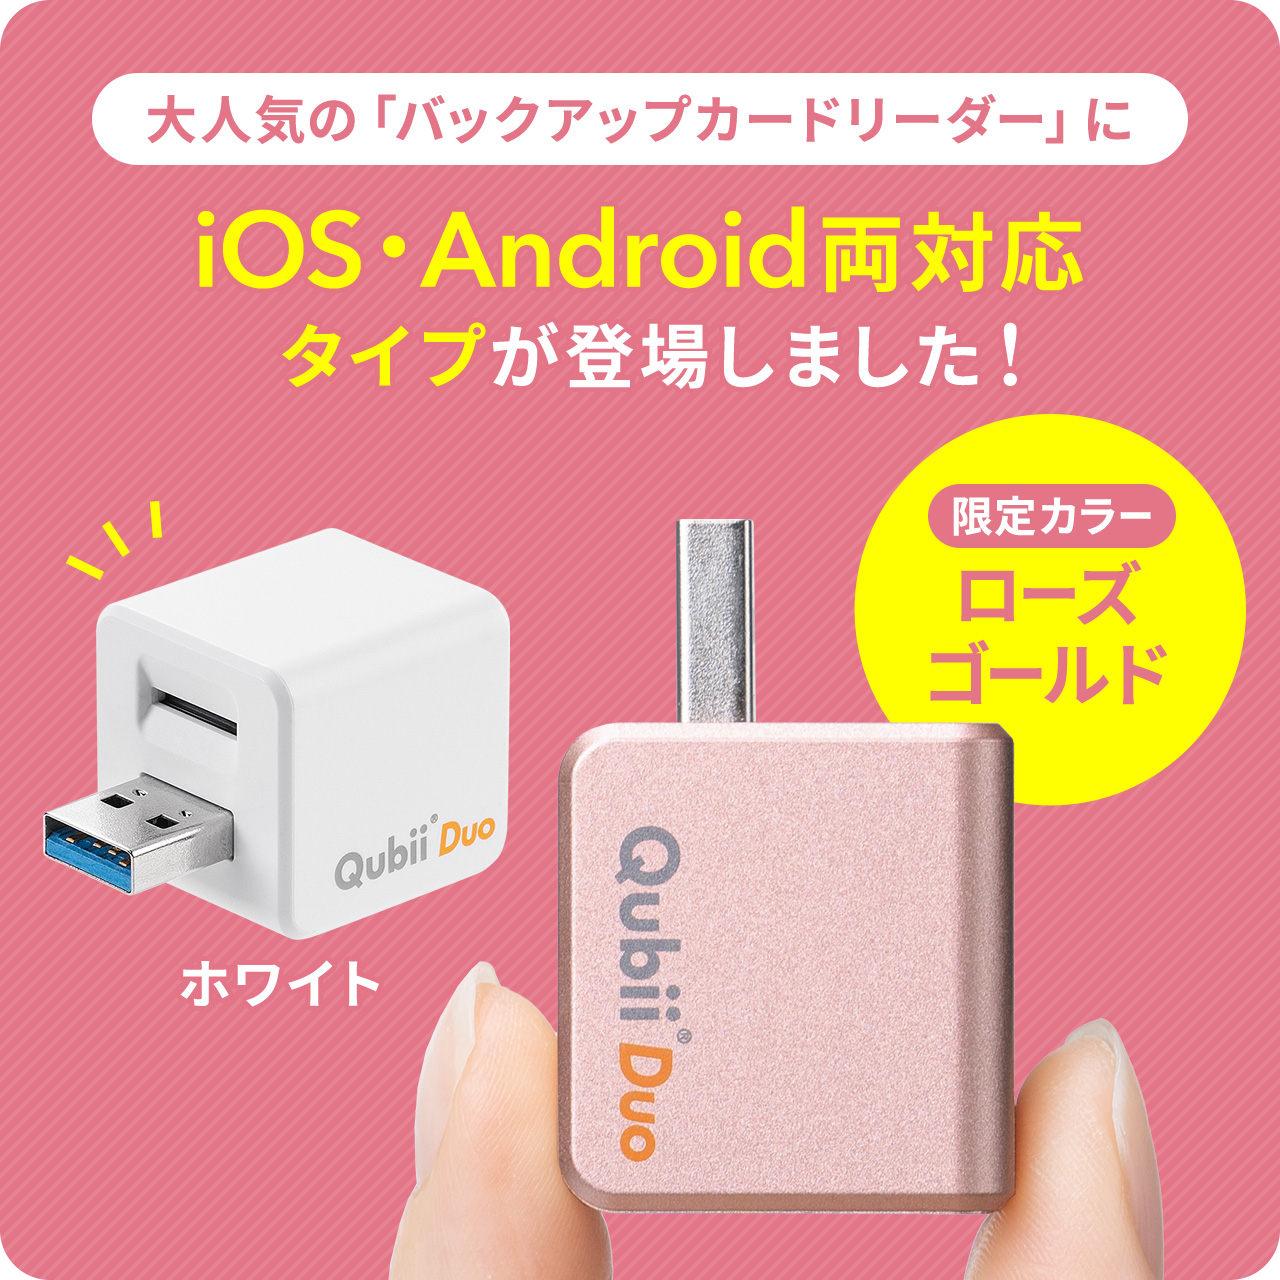 iPhone バックアップ 自動 Qubii Duo Android カードリーダー microSD iPad iOS スマホ 充電 簡単接続  USB3.2 Gen1 動画 写真 データ保存 400-ADRIP013